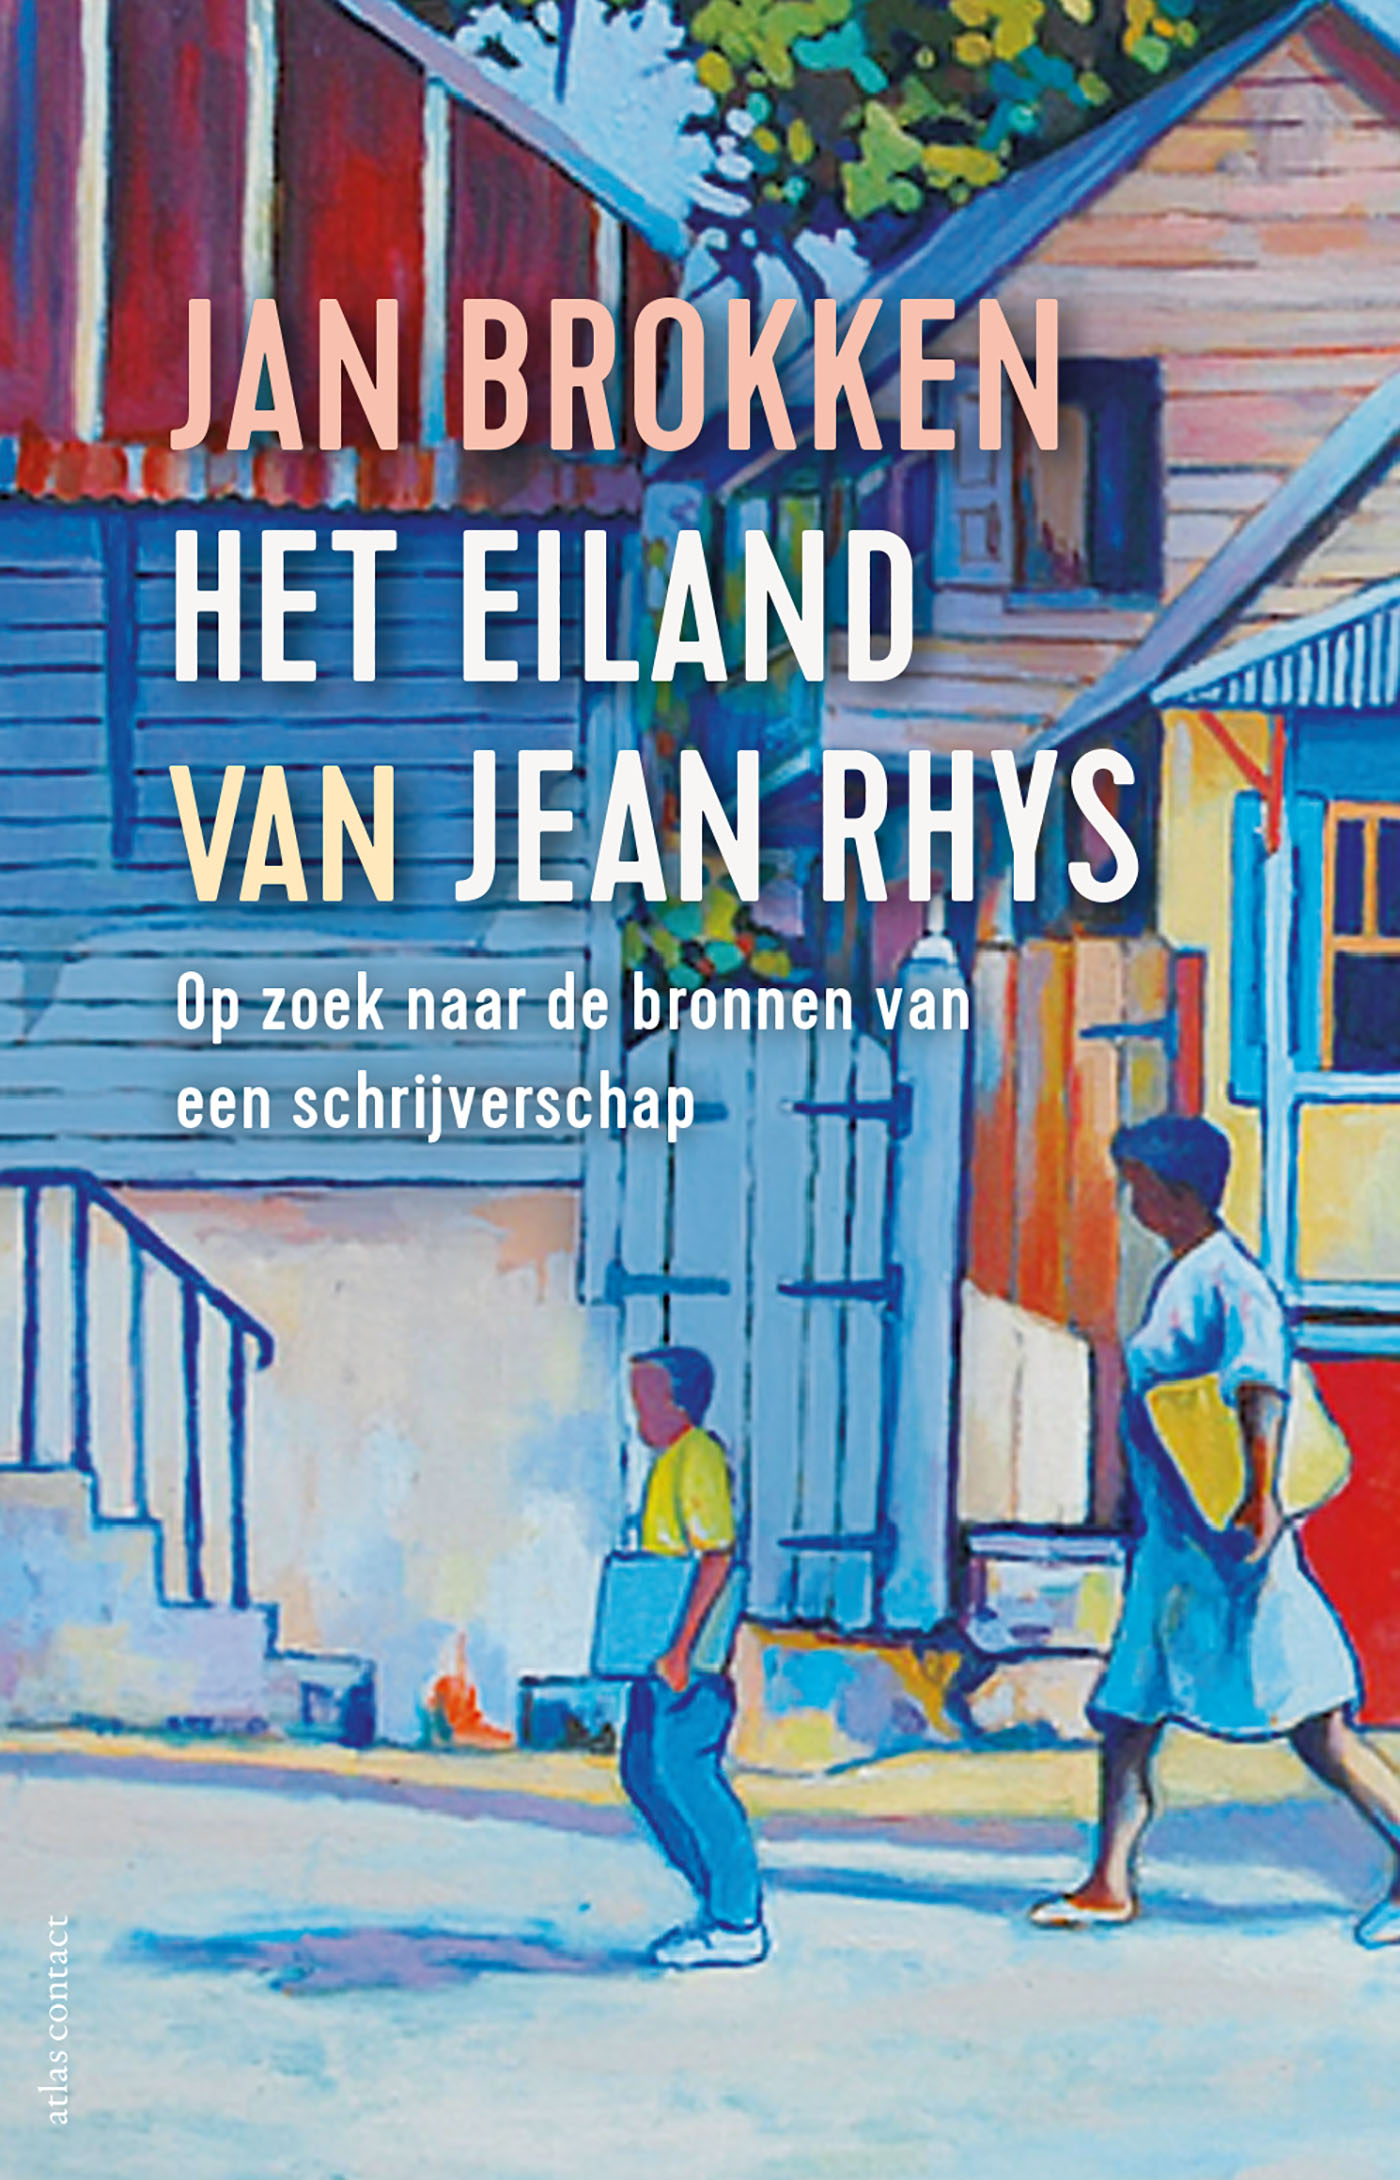 ‘Het eiland van Jean Rhys. Op zoek naar de bronnen van een schrijverschap’ vanaf deze week leverbaar